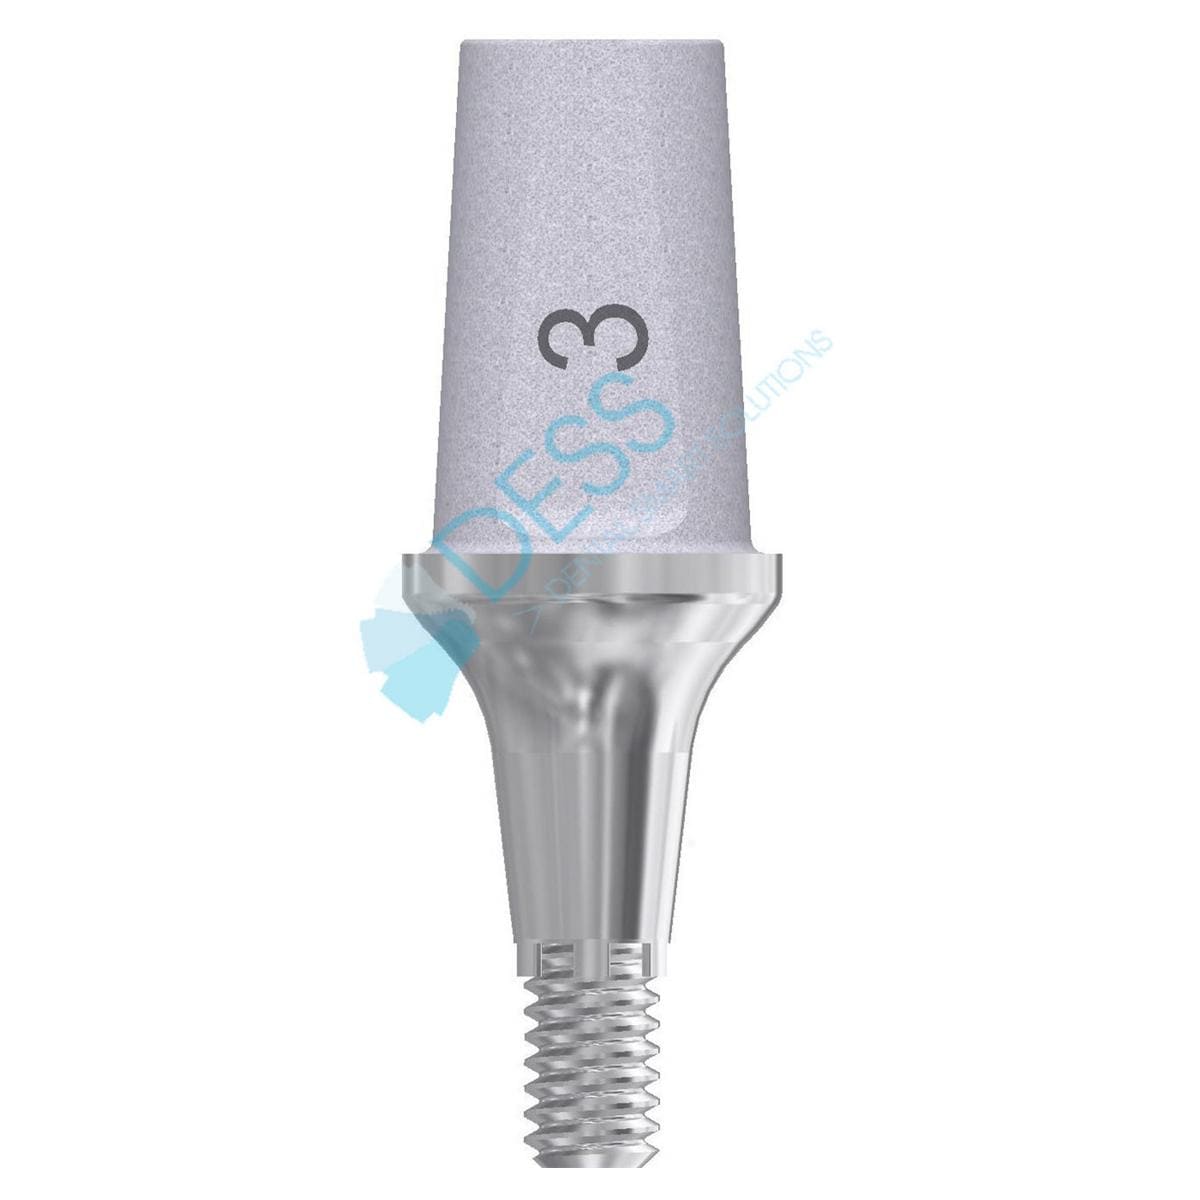 Titanabutment - kompatibel mit Dentsply Ankylos® - Höhe 3,0 mm, 0° gewinkelt, mit Rotationsschutz